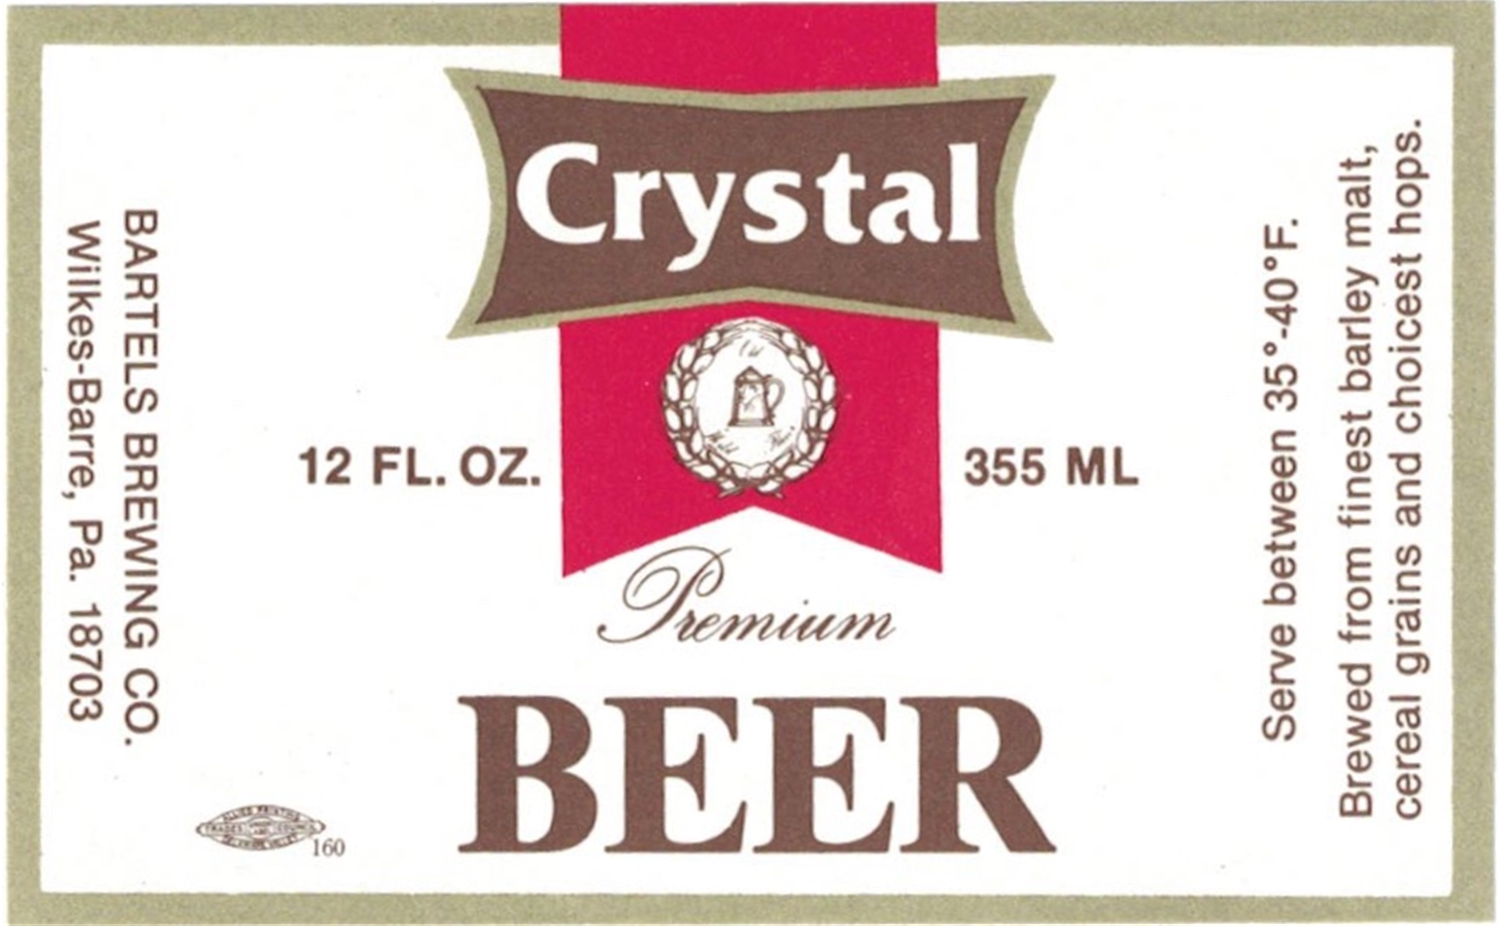 Crystal Premium Beer Label